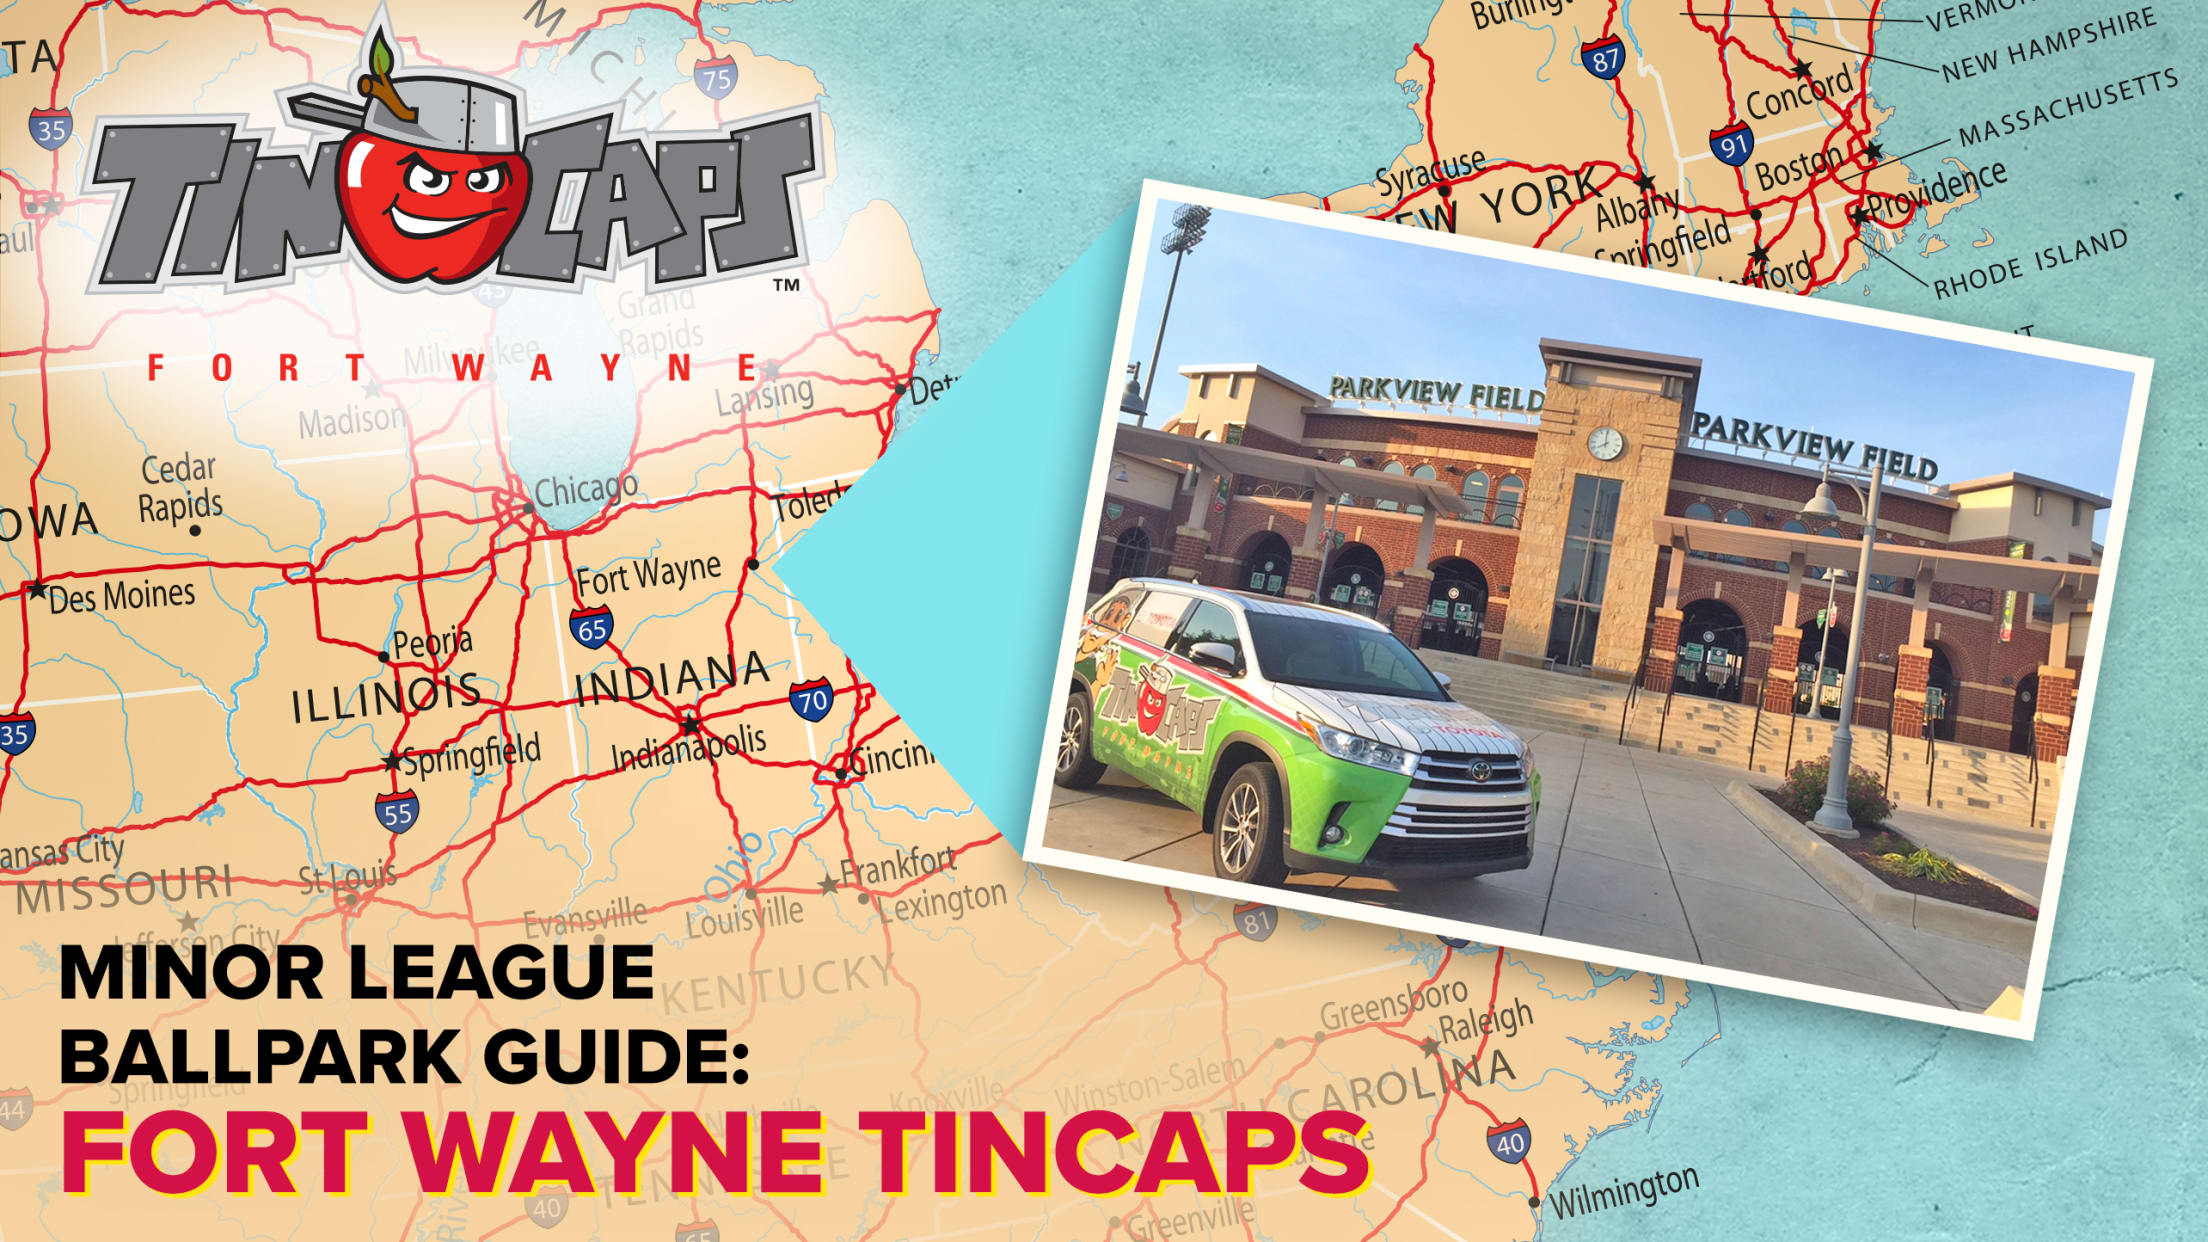 2568x1445-Stadium_Map_Fort_Wayne_TinCaps